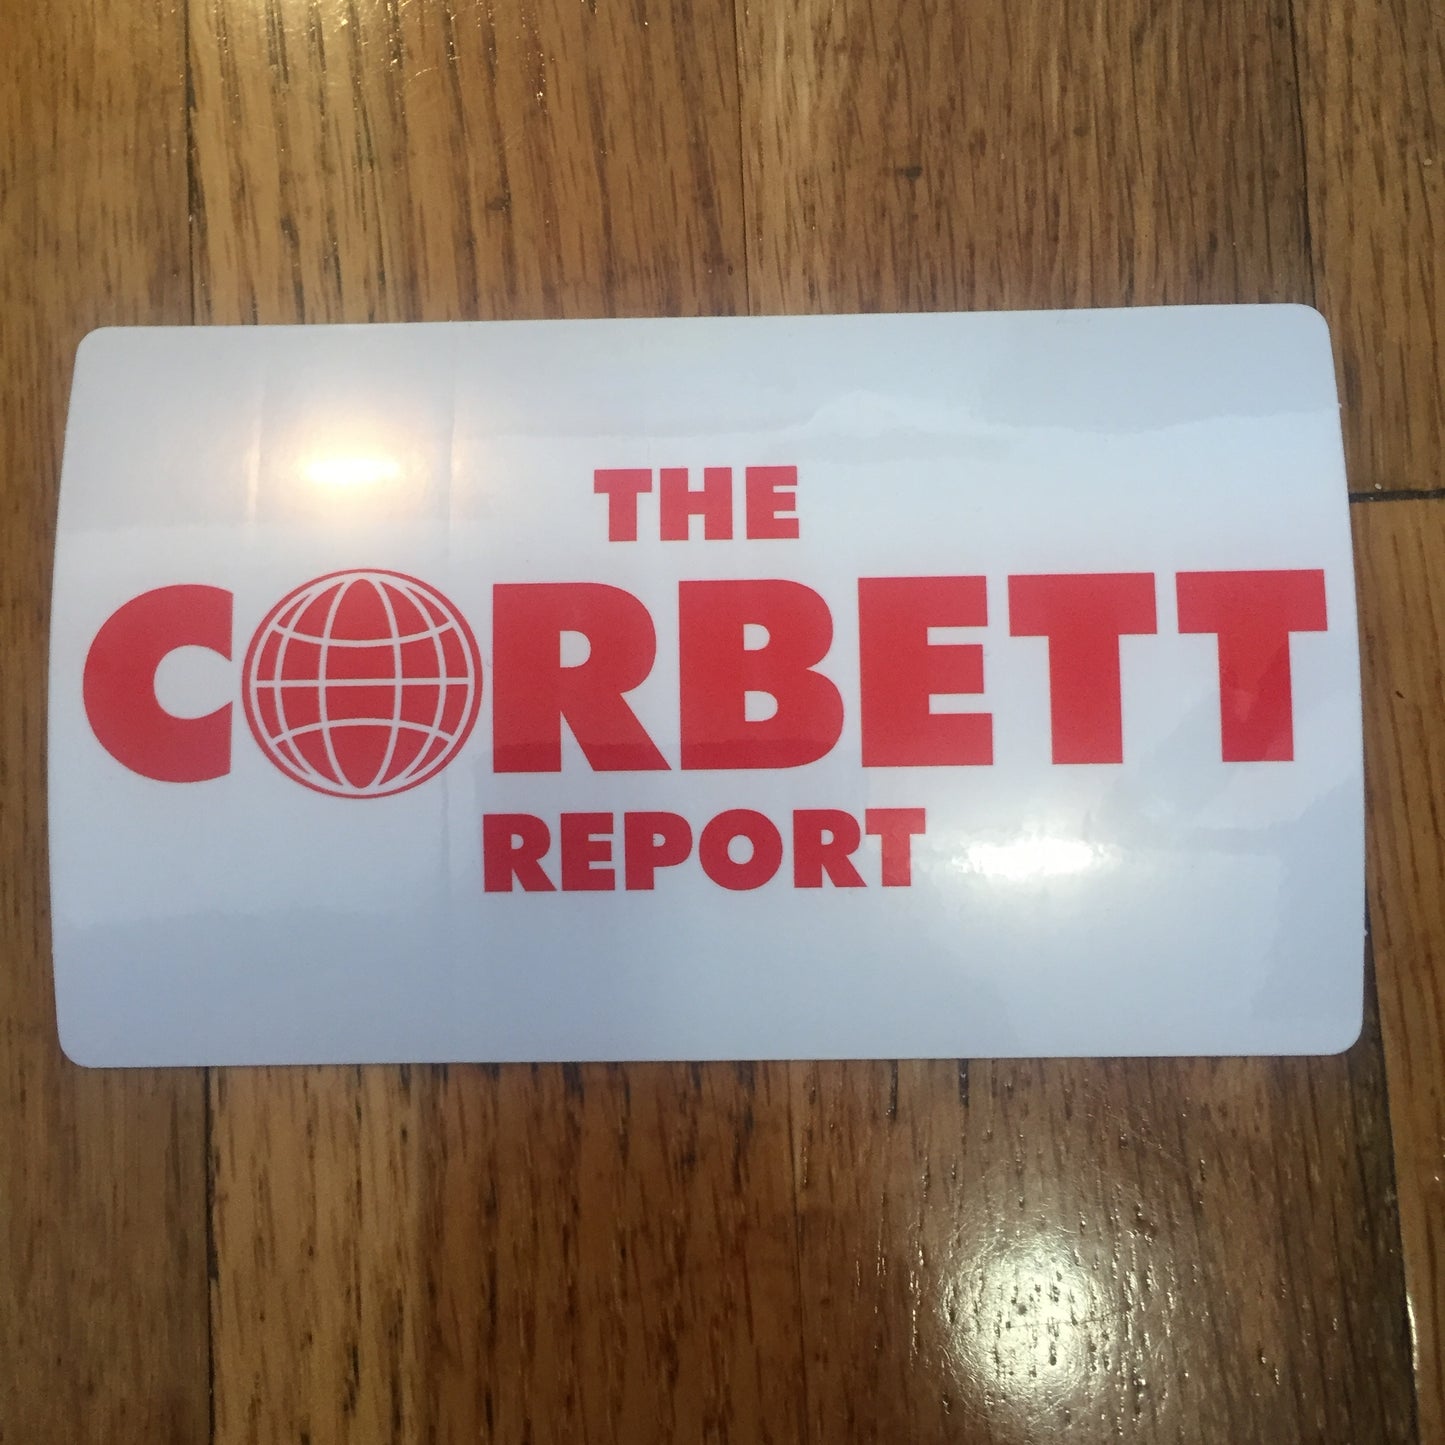 The Corbett Report Stickers